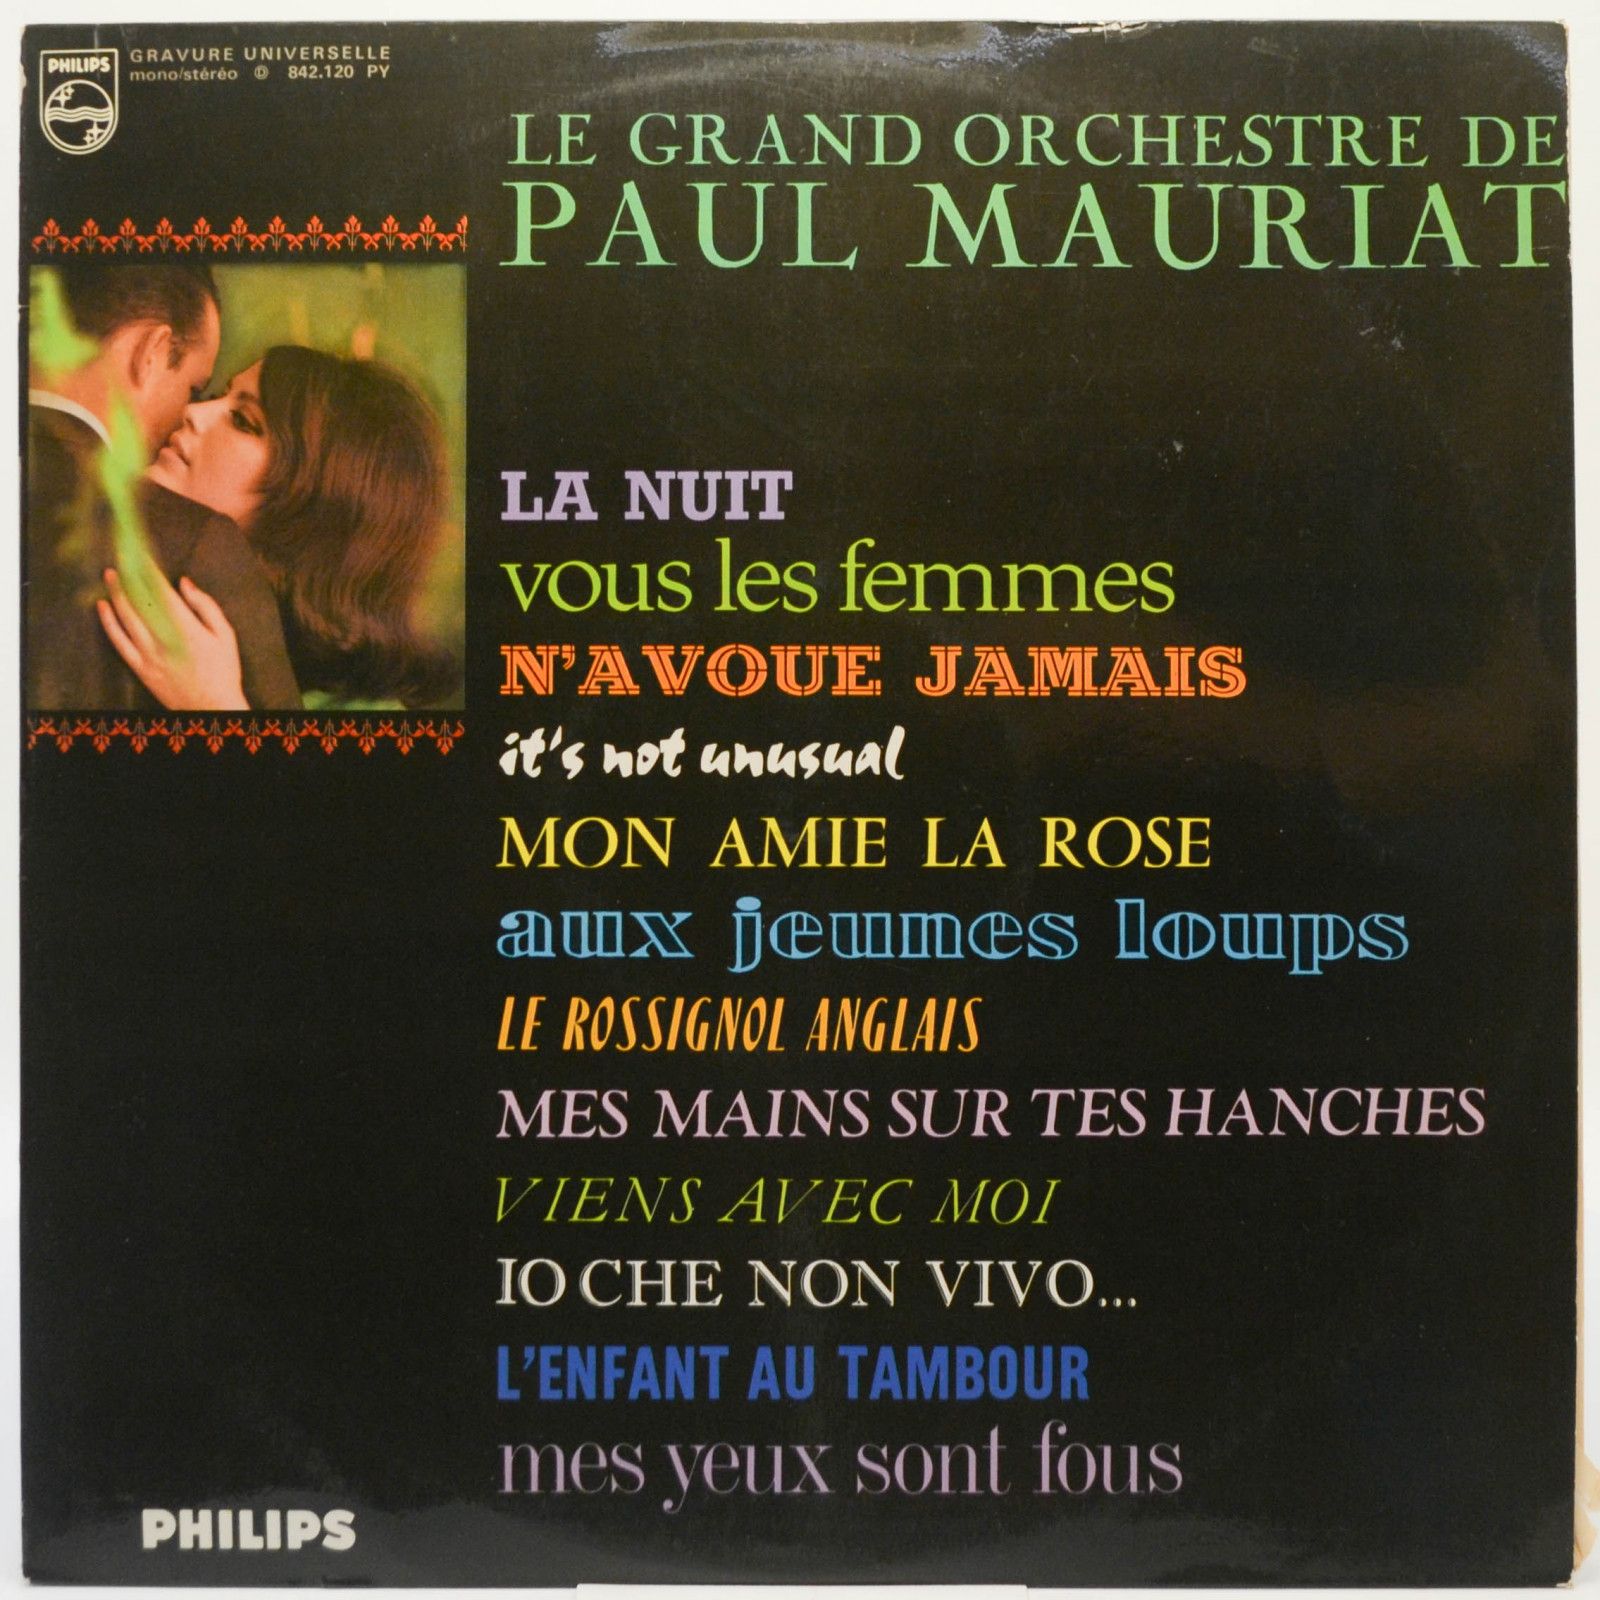 Le Grand Orchestre De Paul Mauriat — Le Grand Orchestre De Paul Mauriat (France), 1965